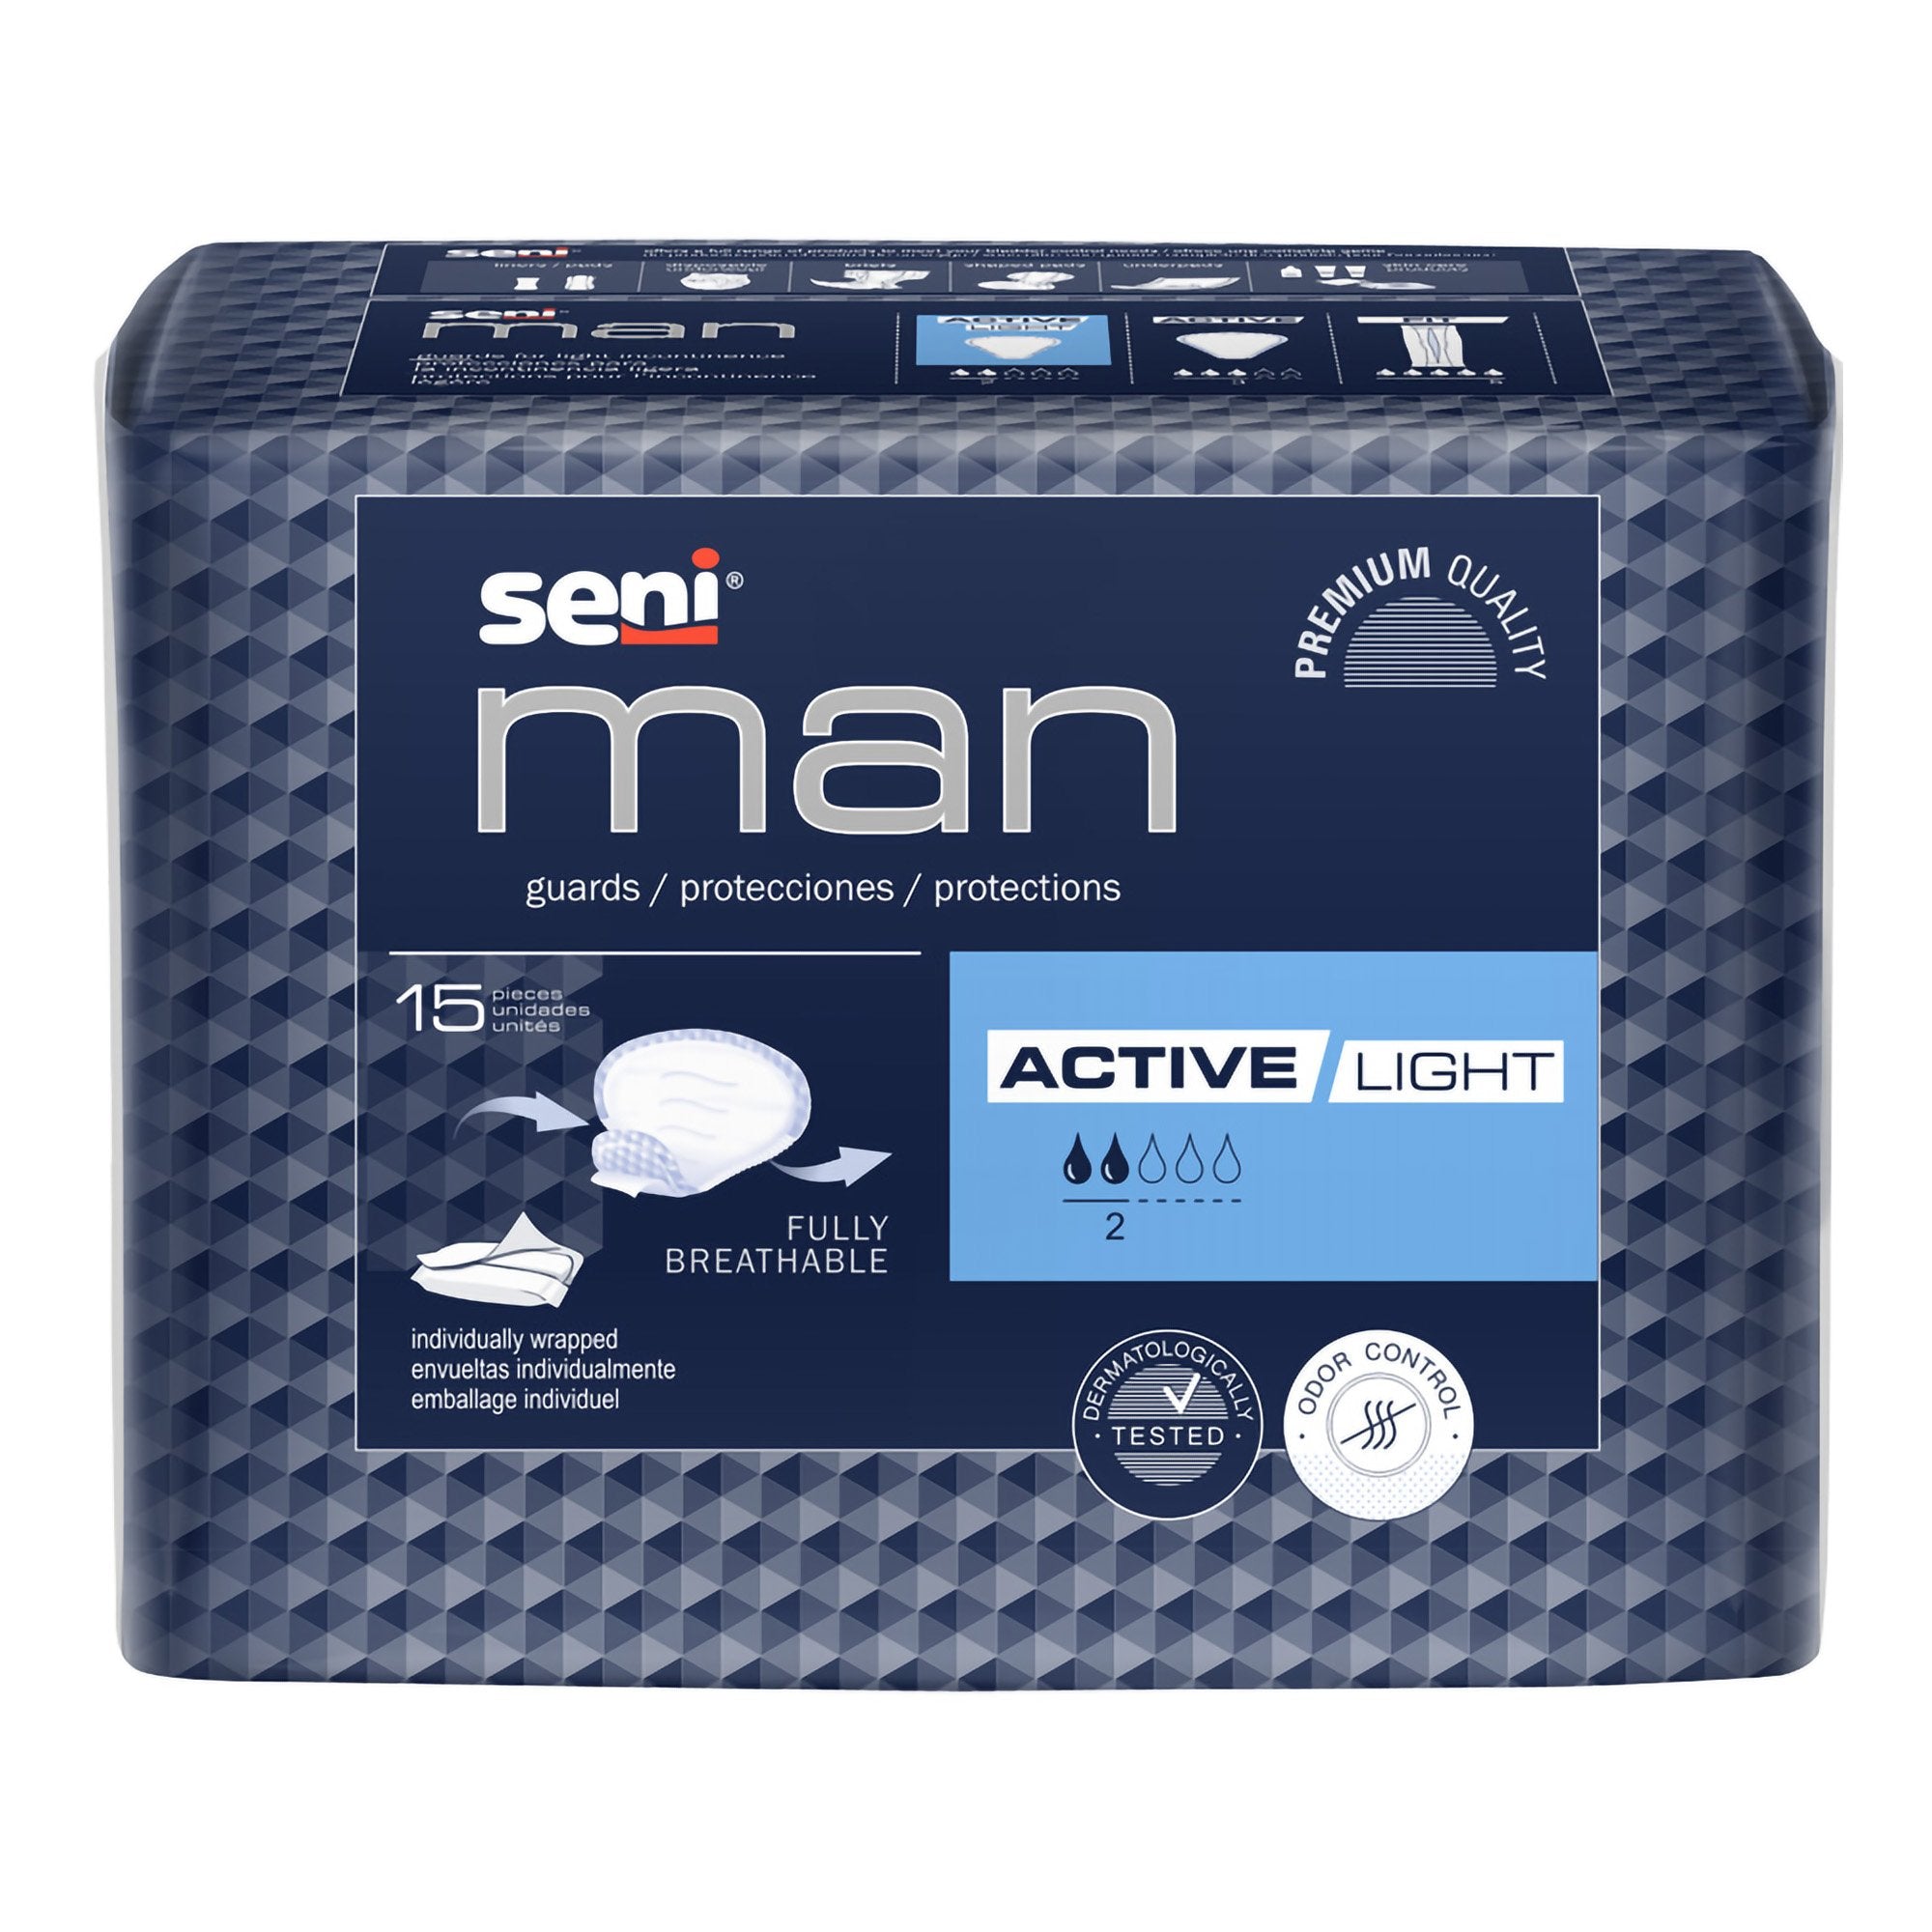 Seni® Man Active Light Guards